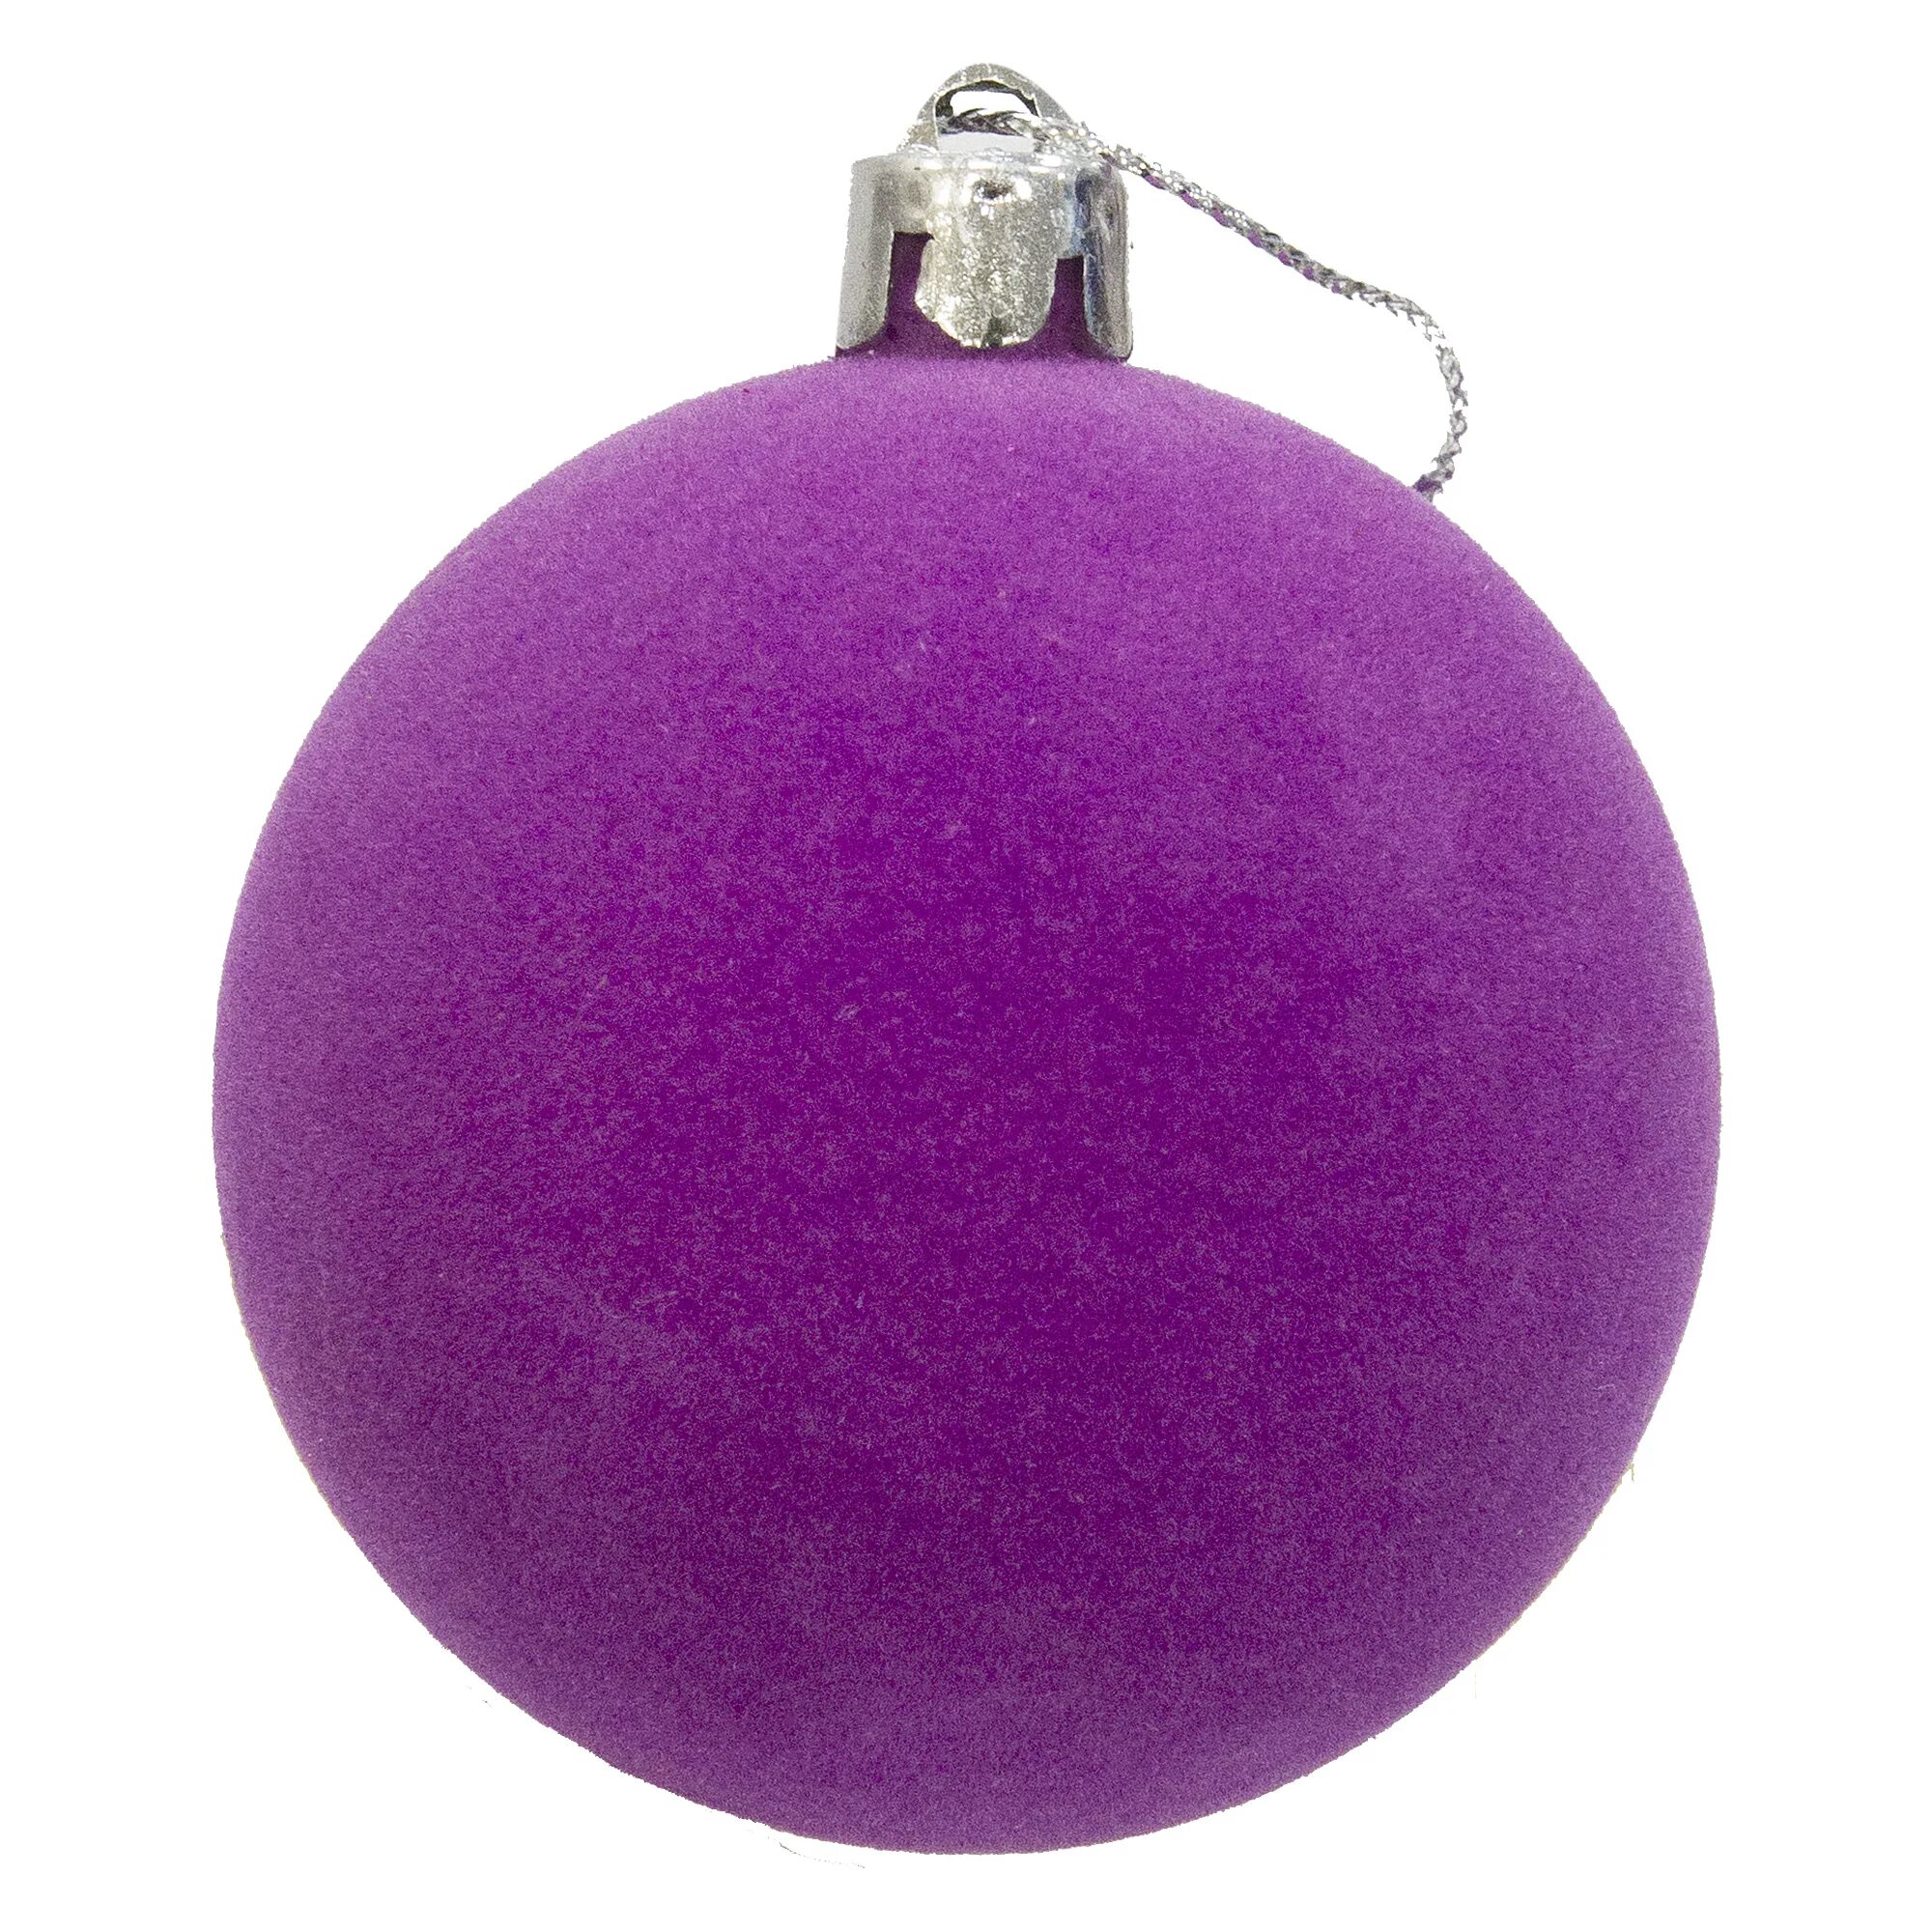 Шар фиолетового цвета. Елочные шары. Фиолетовые елочные игрушки. Фиолетовый елочный шарик. Шарик новогодний.